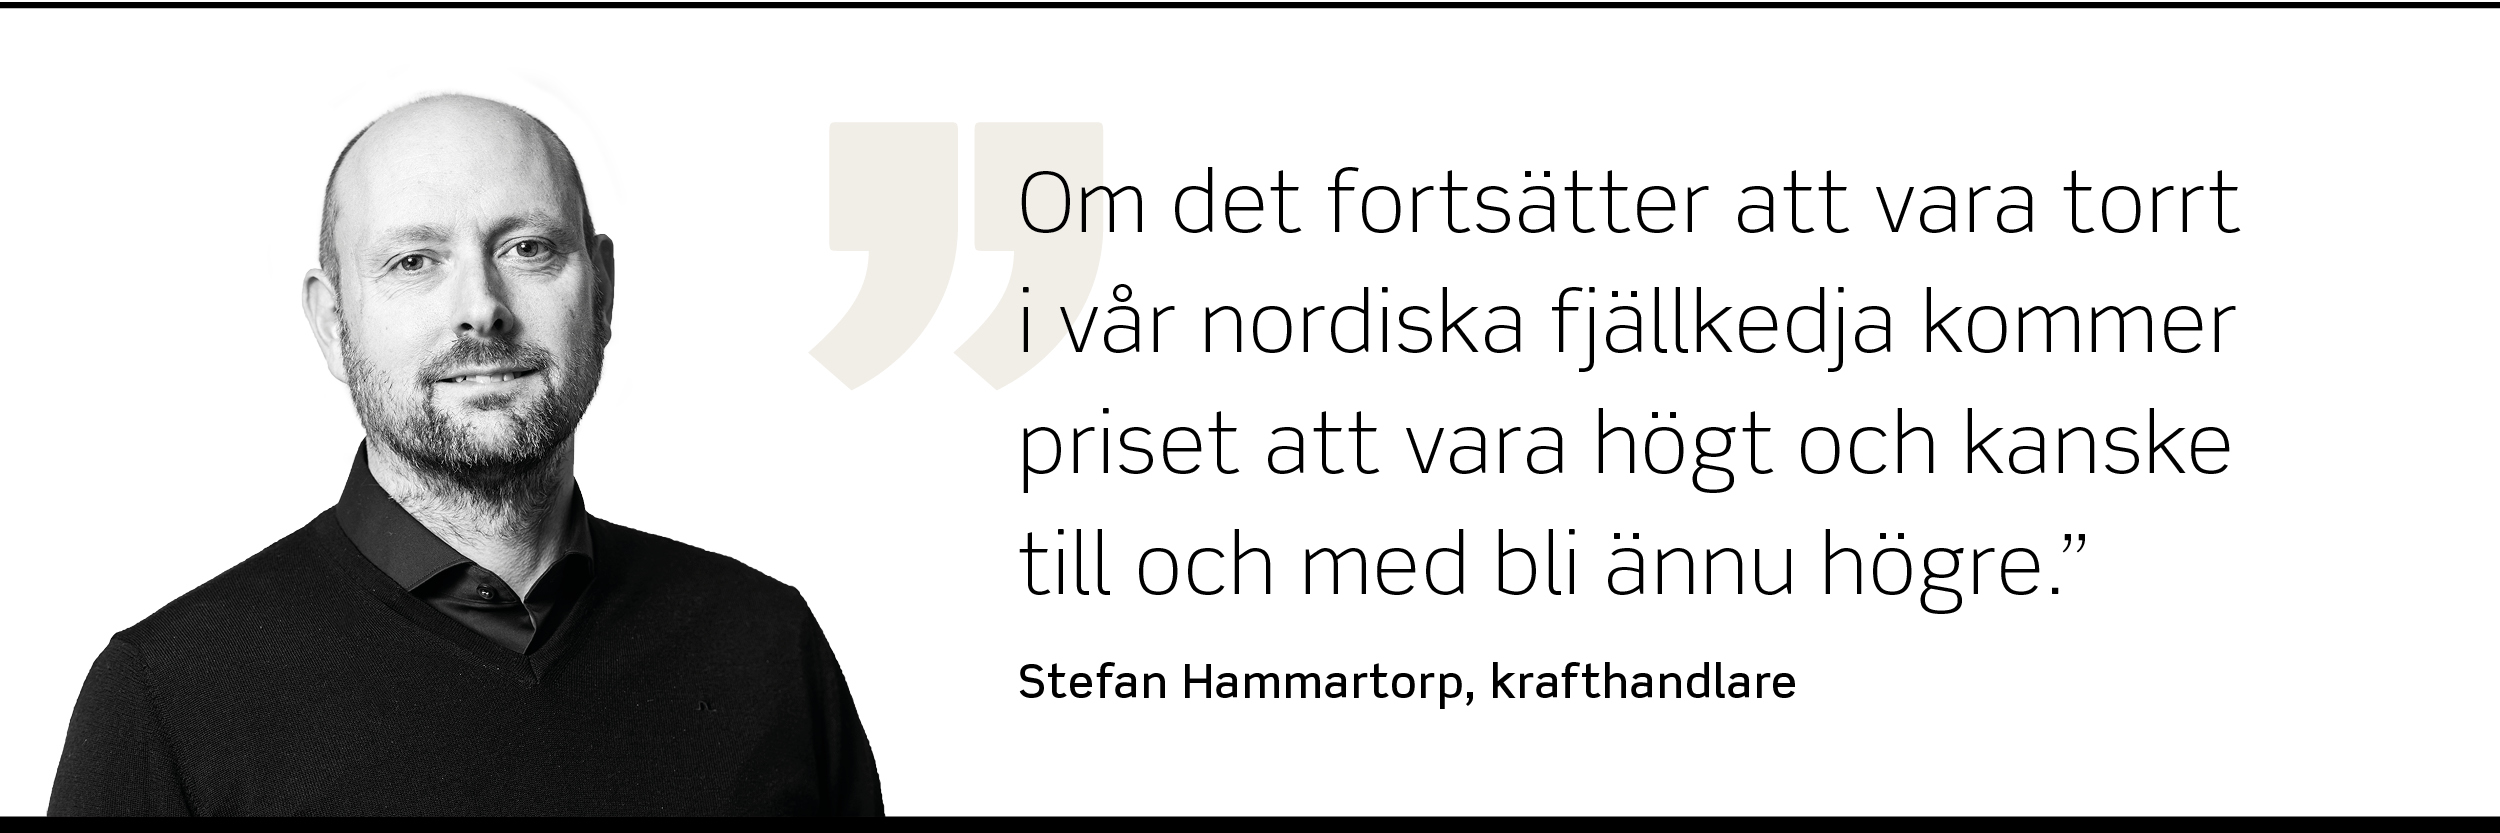 Foto på Stefan Hammartorp, krafthandlare, som säger: "Om det fortsätter att vara torrt i vår nordiska fjällkedja kommer priset att vara högt och kanske till och med bli ännu högre."